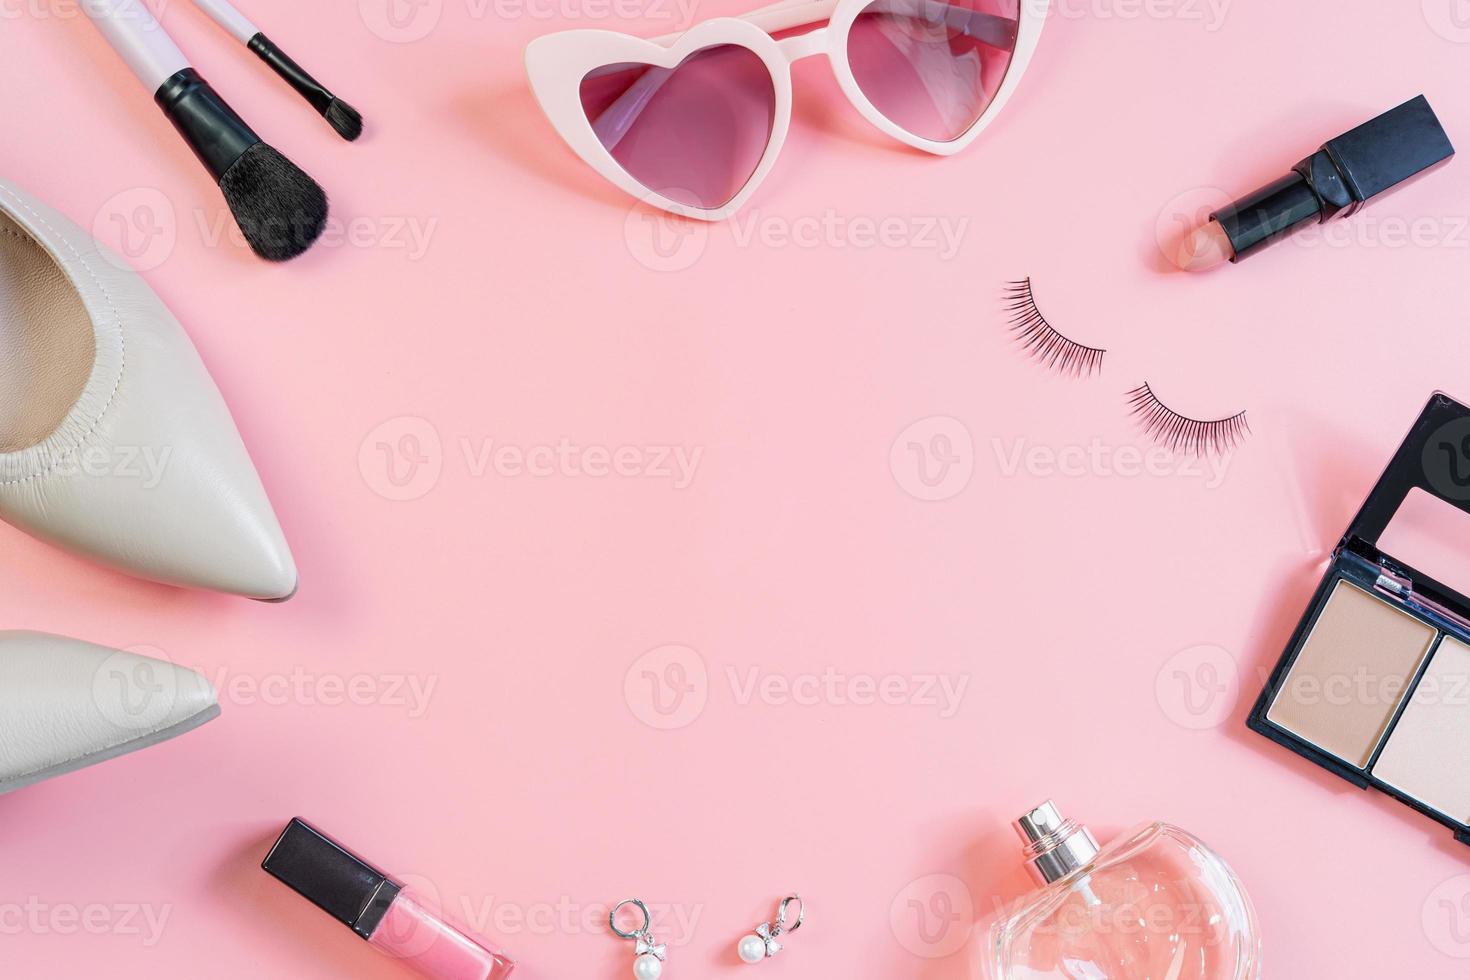 maquiagem feminina, cosméticos e itens de moda e espaço de cópia, vista superior foto